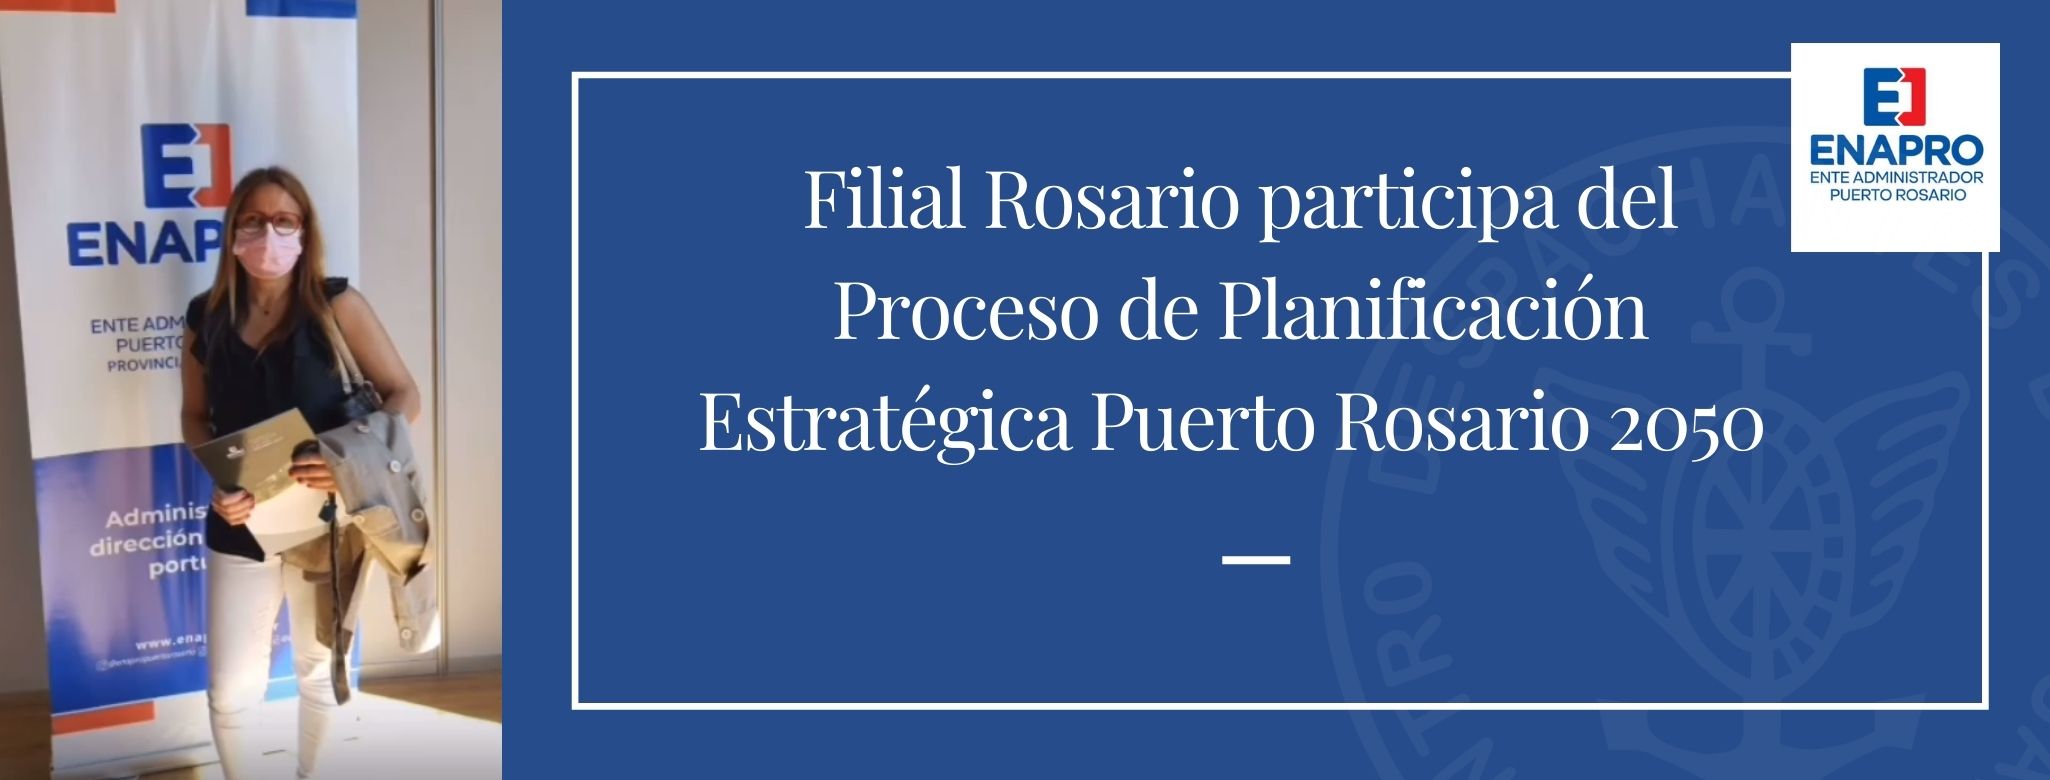 Filial Rosario - Participación en el ENAPRO